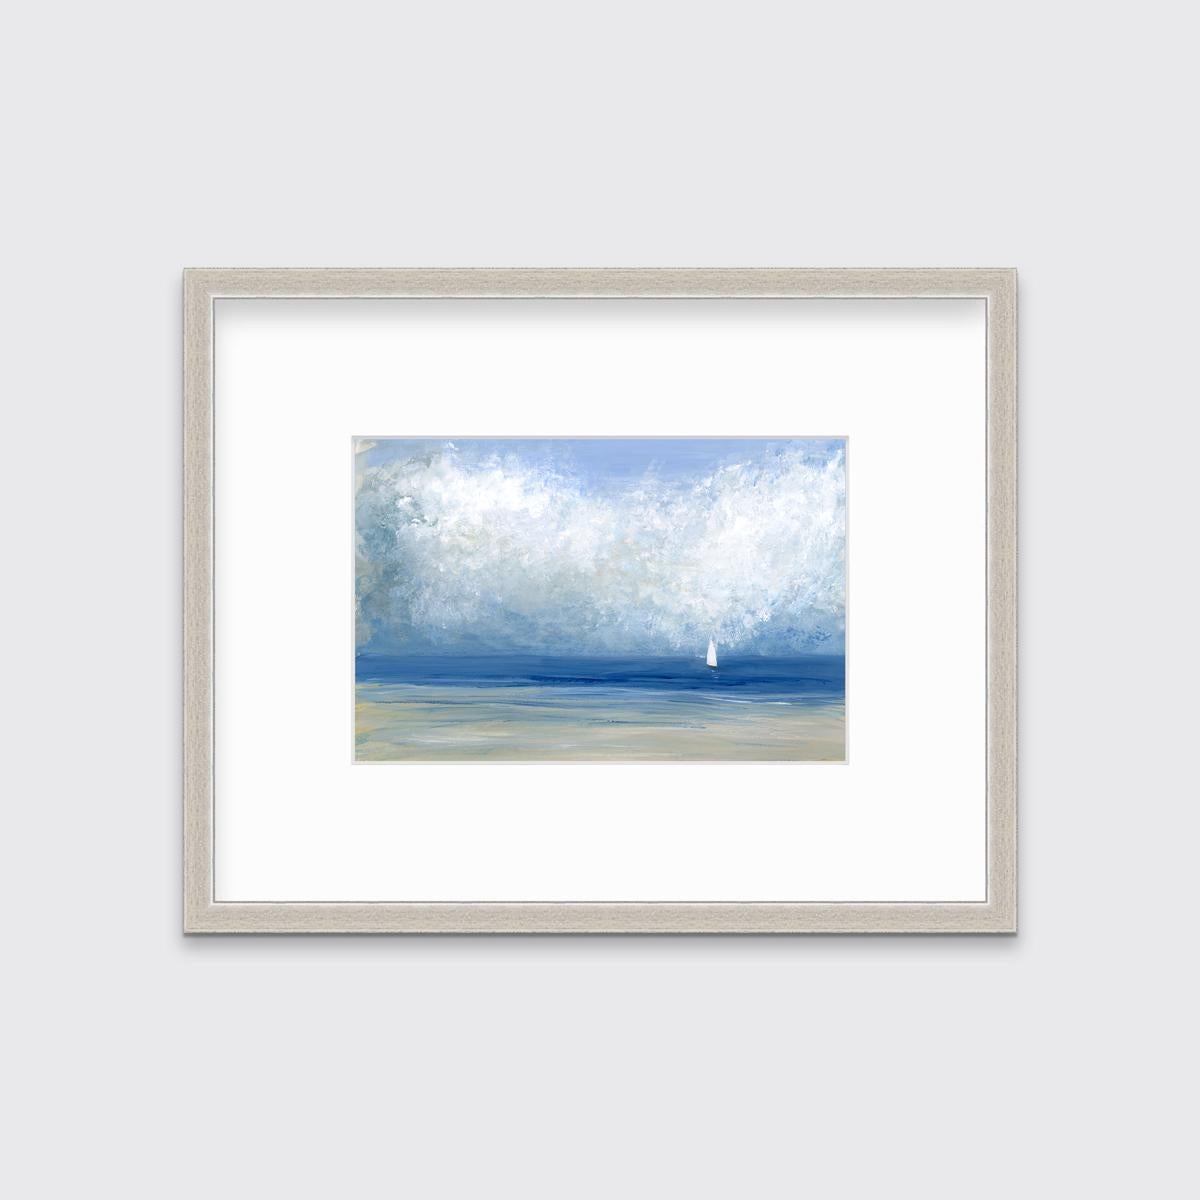 Diese limitierte Auflage eines zeitgenössischen Seestücks von S.C. Aldo zeichnet sich durch eine kühle, küstennahe Farbgebung aus. Es zeigt eine leicht abstrahierte Küstenszene mit hellblauem Himmel, dicken, weißen, abstrahierten Wolken und einem